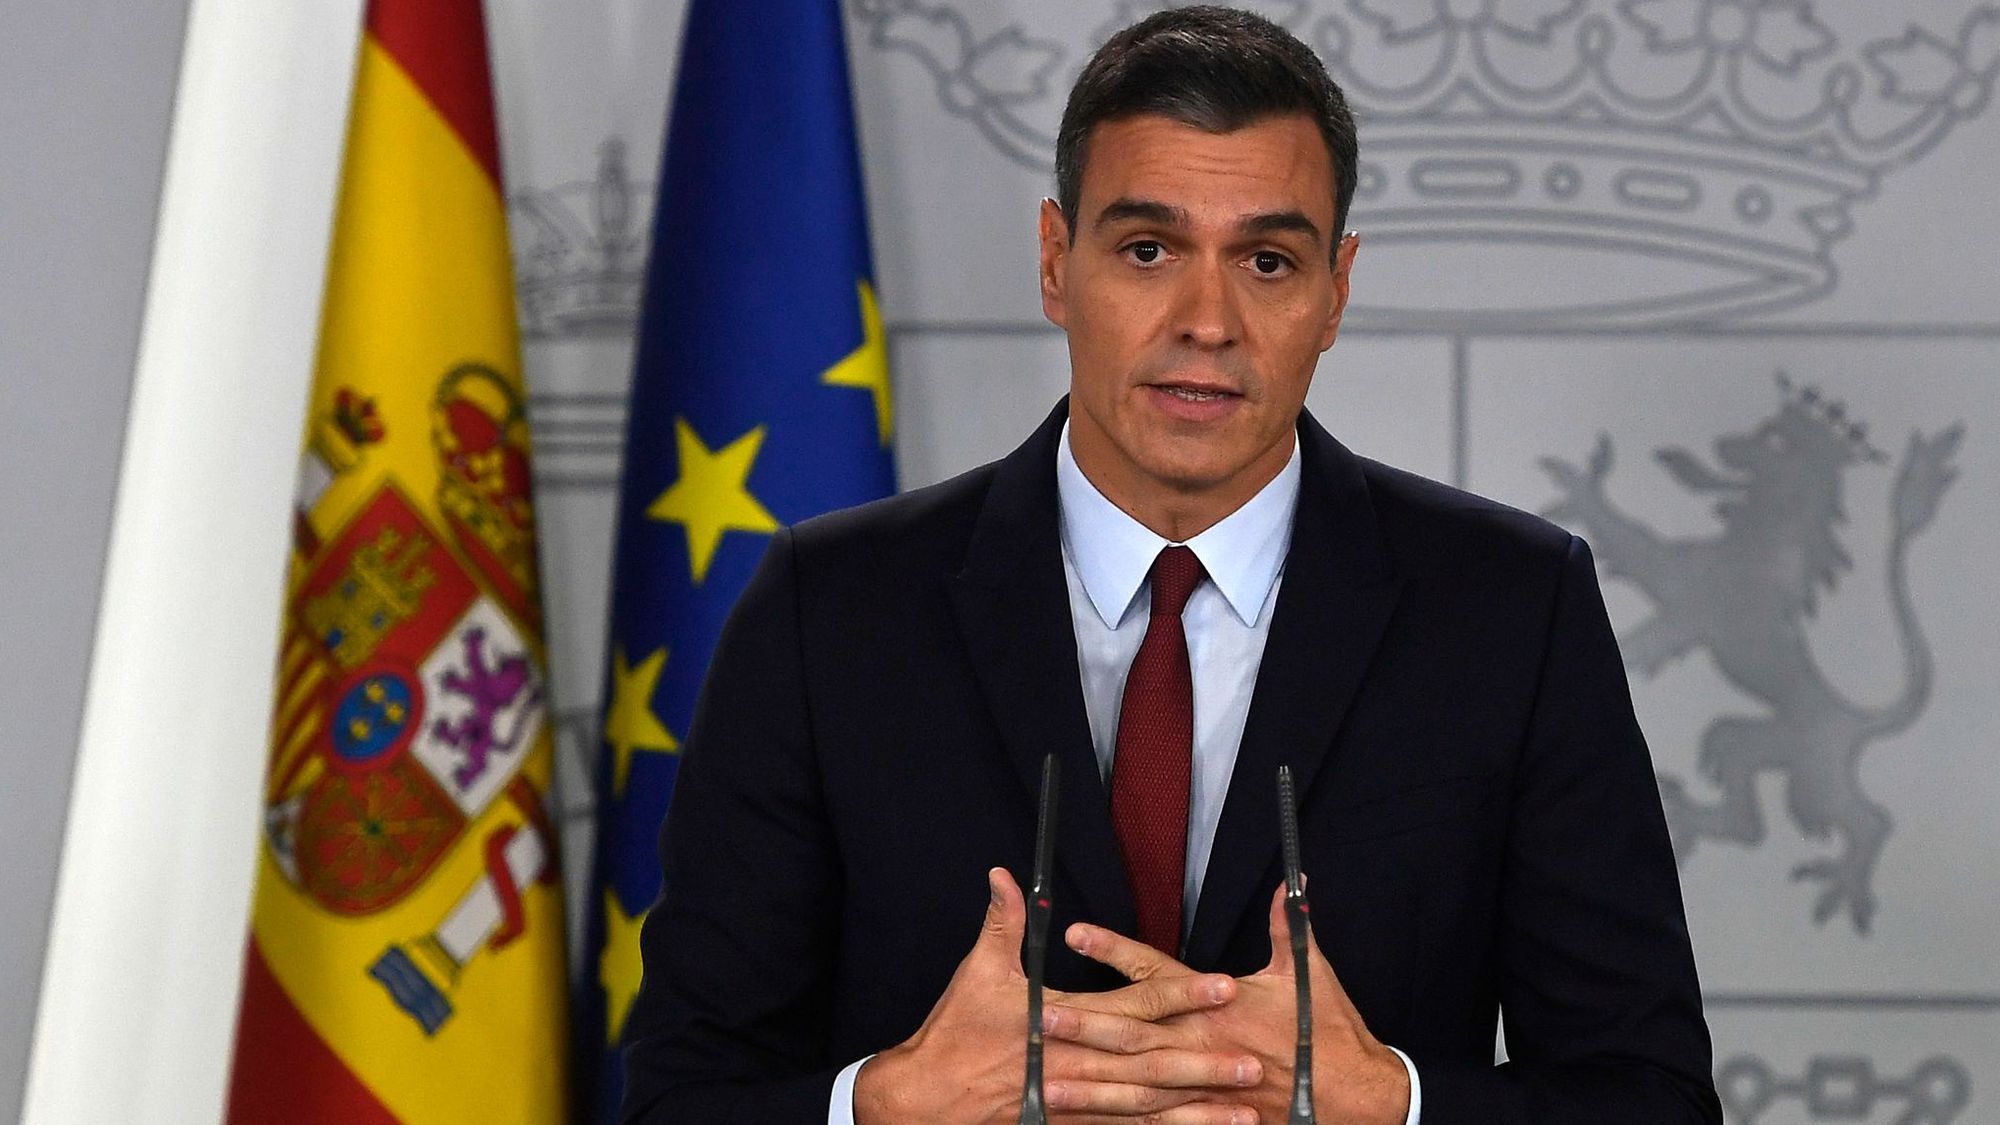 Inversiones españolas en Marruecos.  El primer ministro español encarcelado por noticias falsas